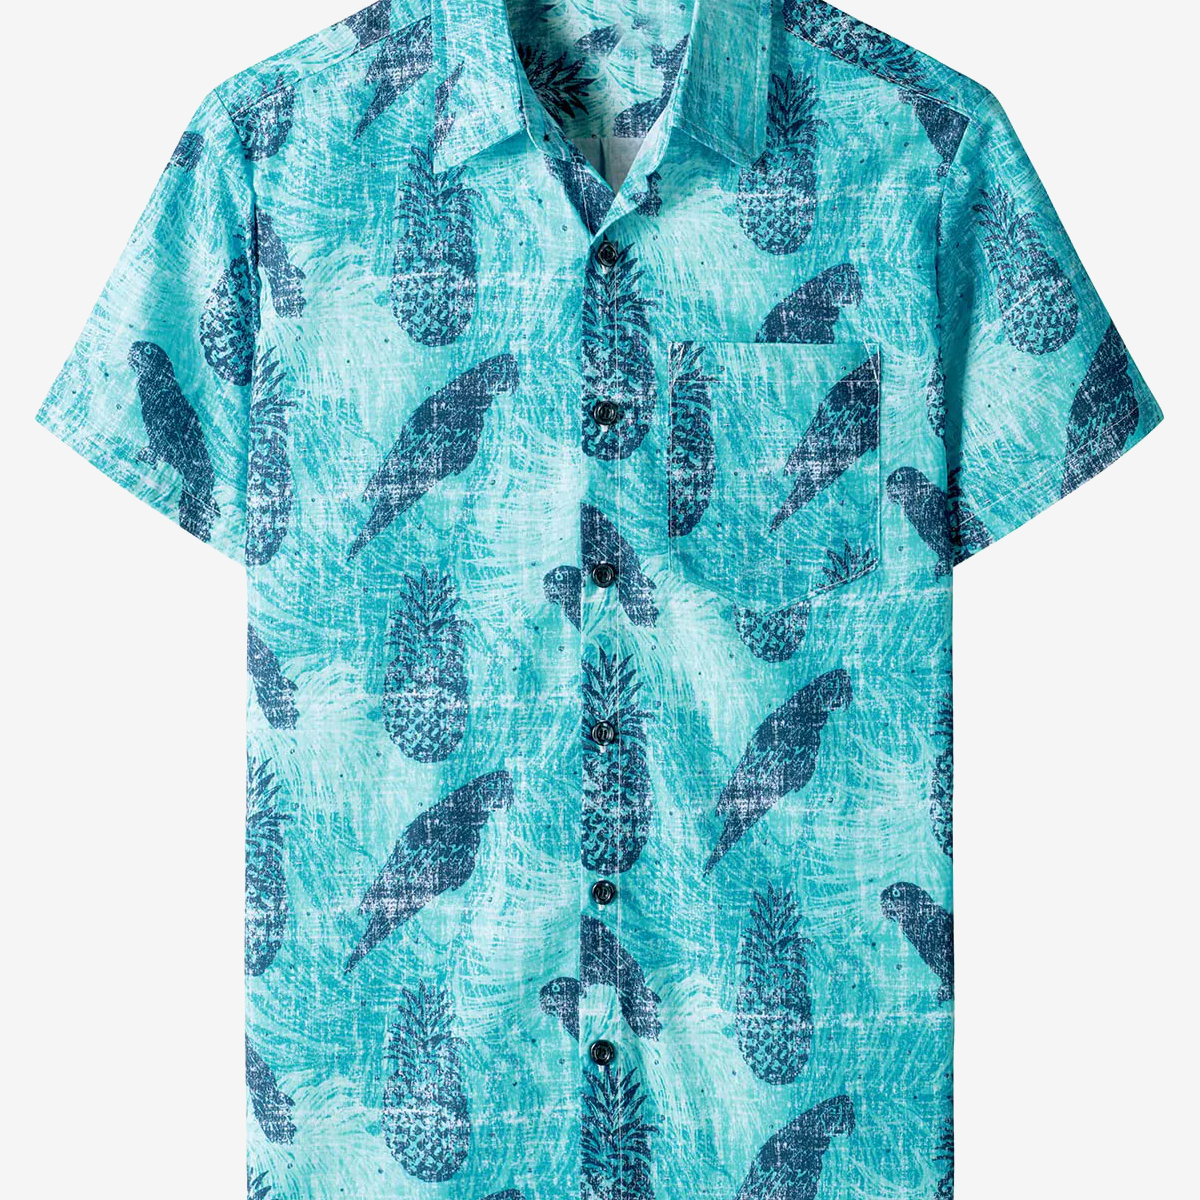 Men's Pineapple Blue Hawaiian Summer Casual Beach Button Holiday Short Sleeve Shirt